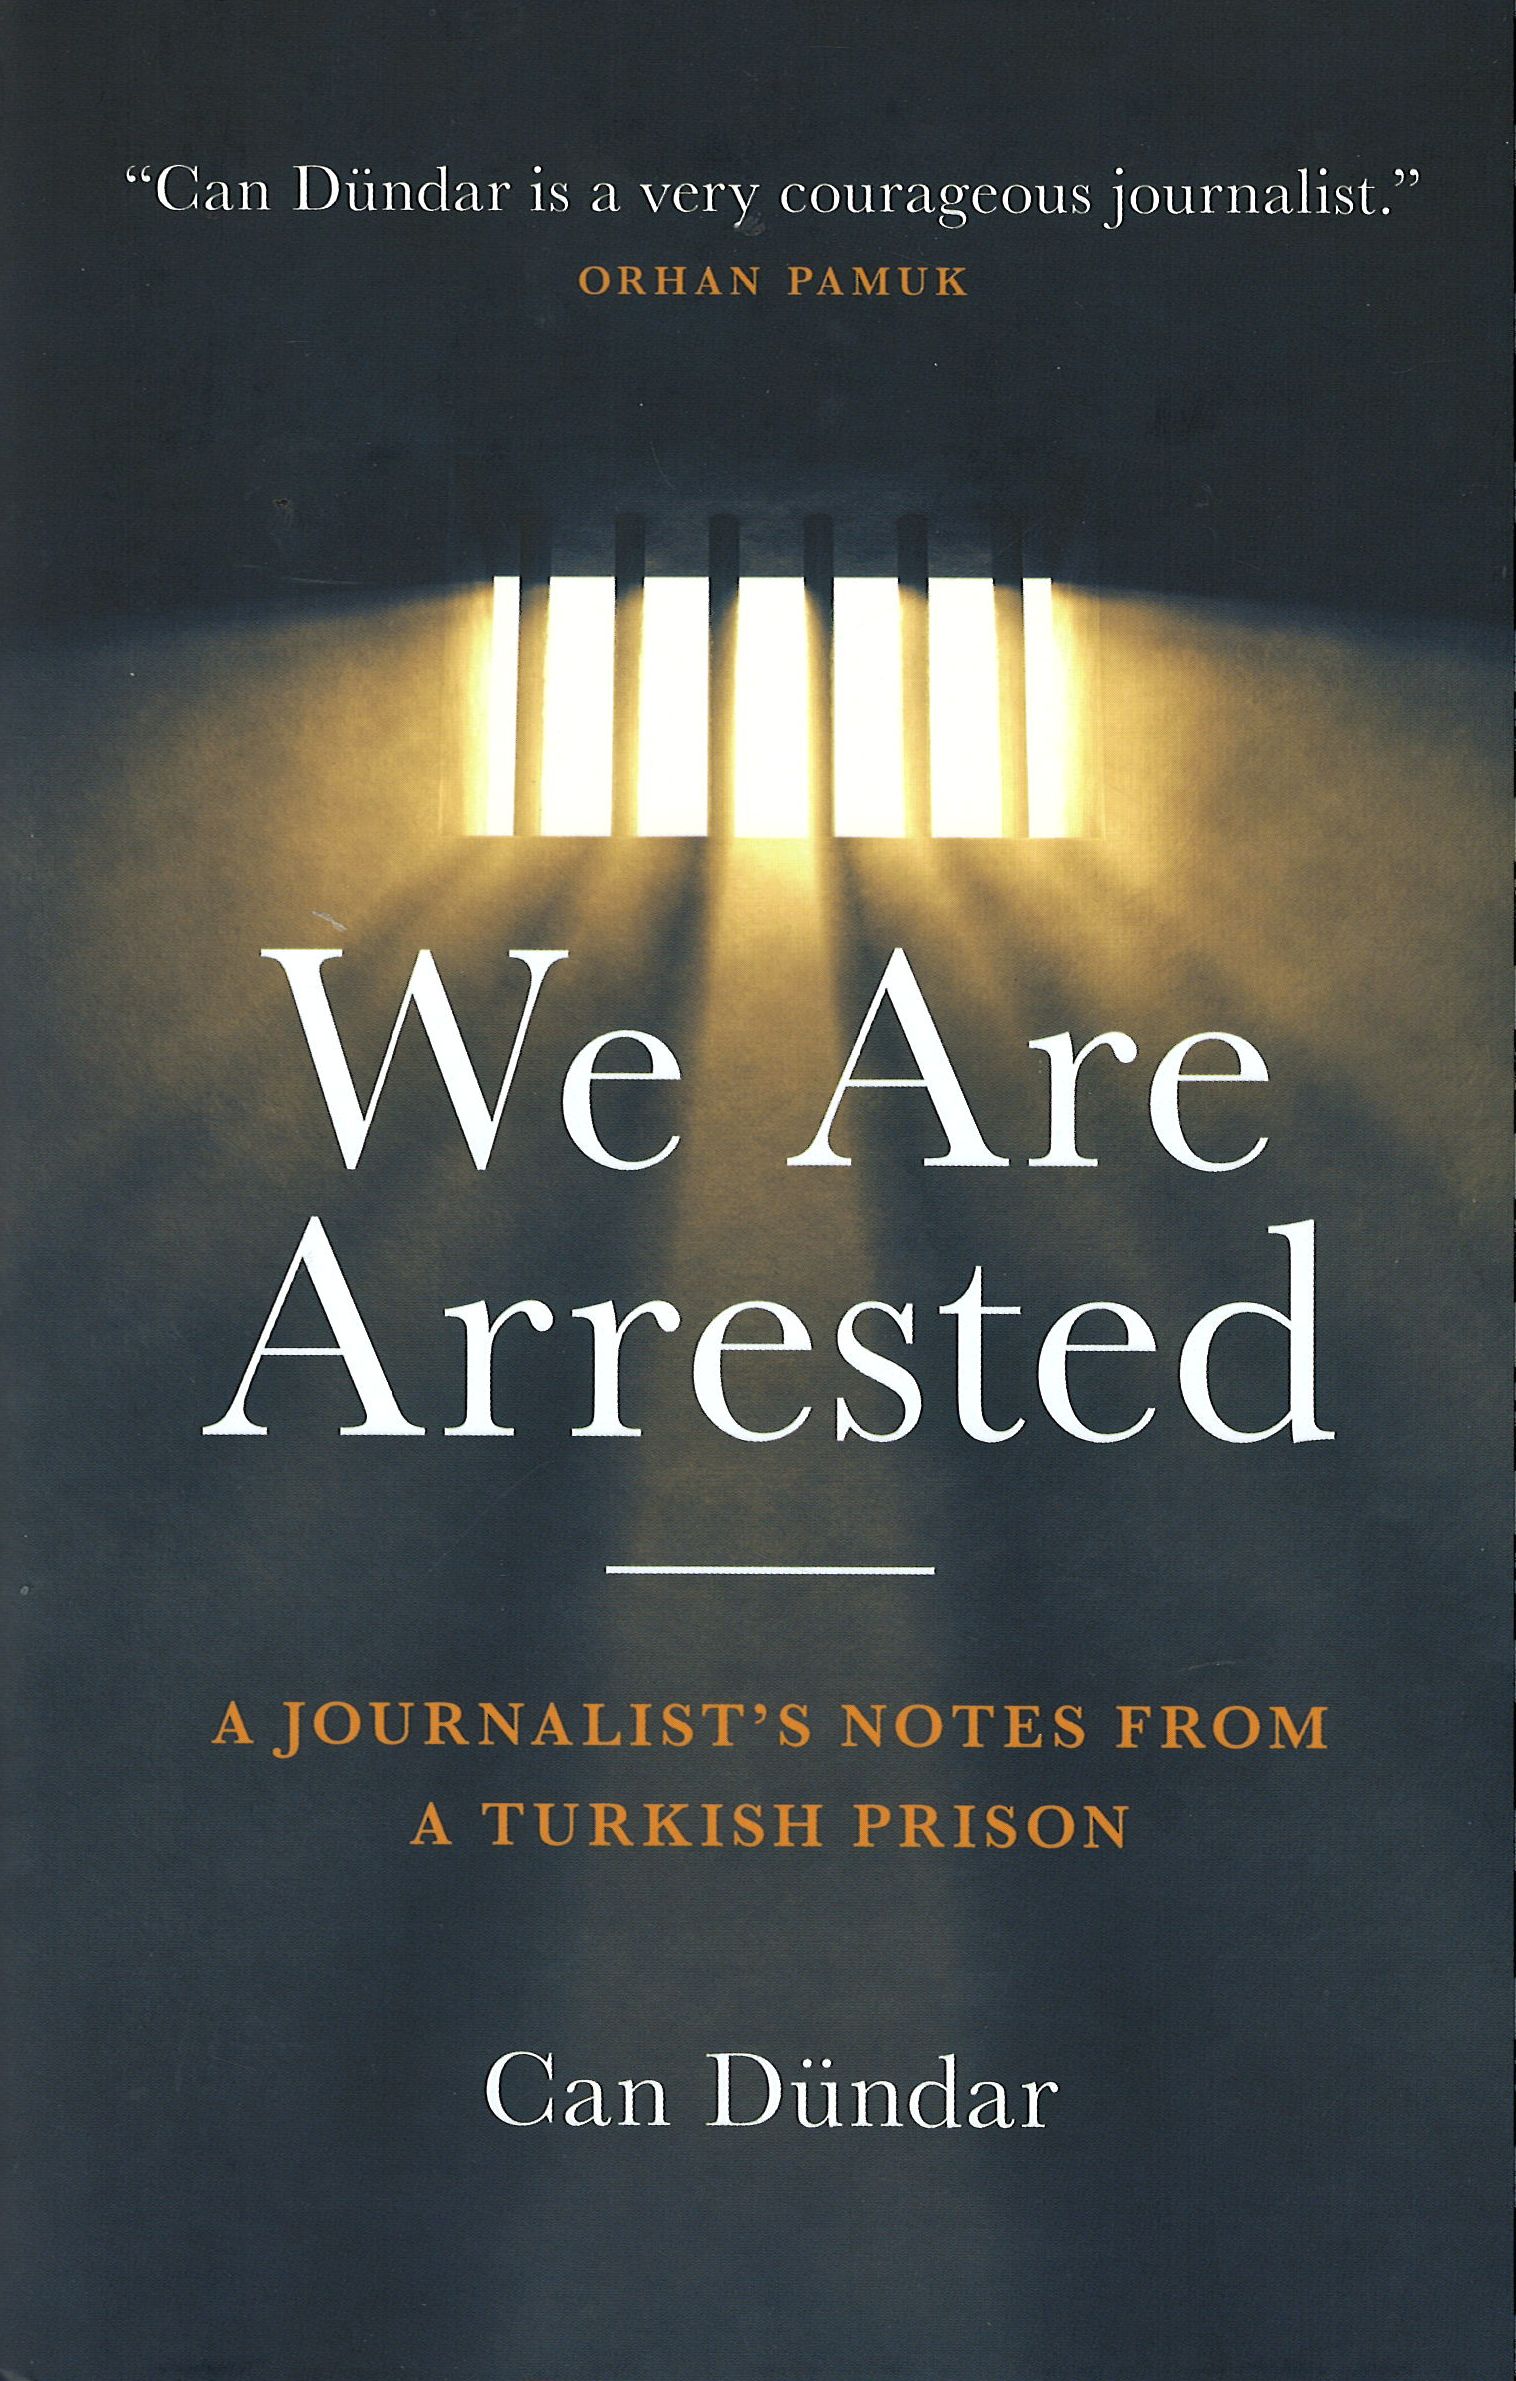 #WeAreArrested: Turkish journalist Can Dündar’s book performed live in UK